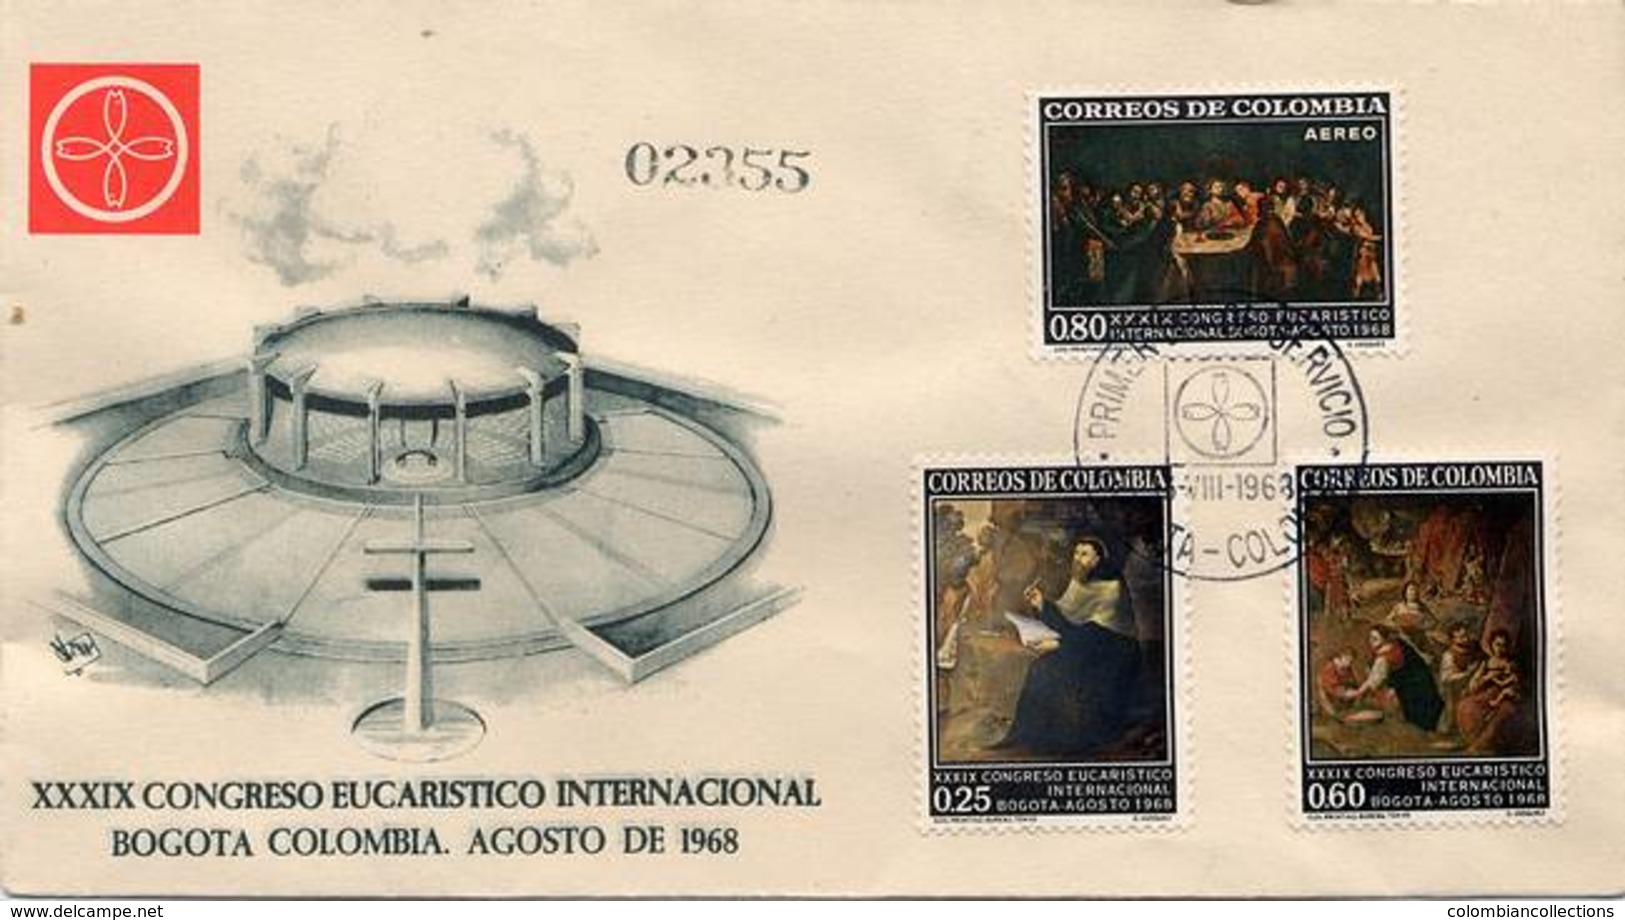 Lote 1162-0-1F, Colombia, 1968, SPD-FDC, XXXIX Congreso Eucaristico, Eucharistic Congress, Pope - Colombia